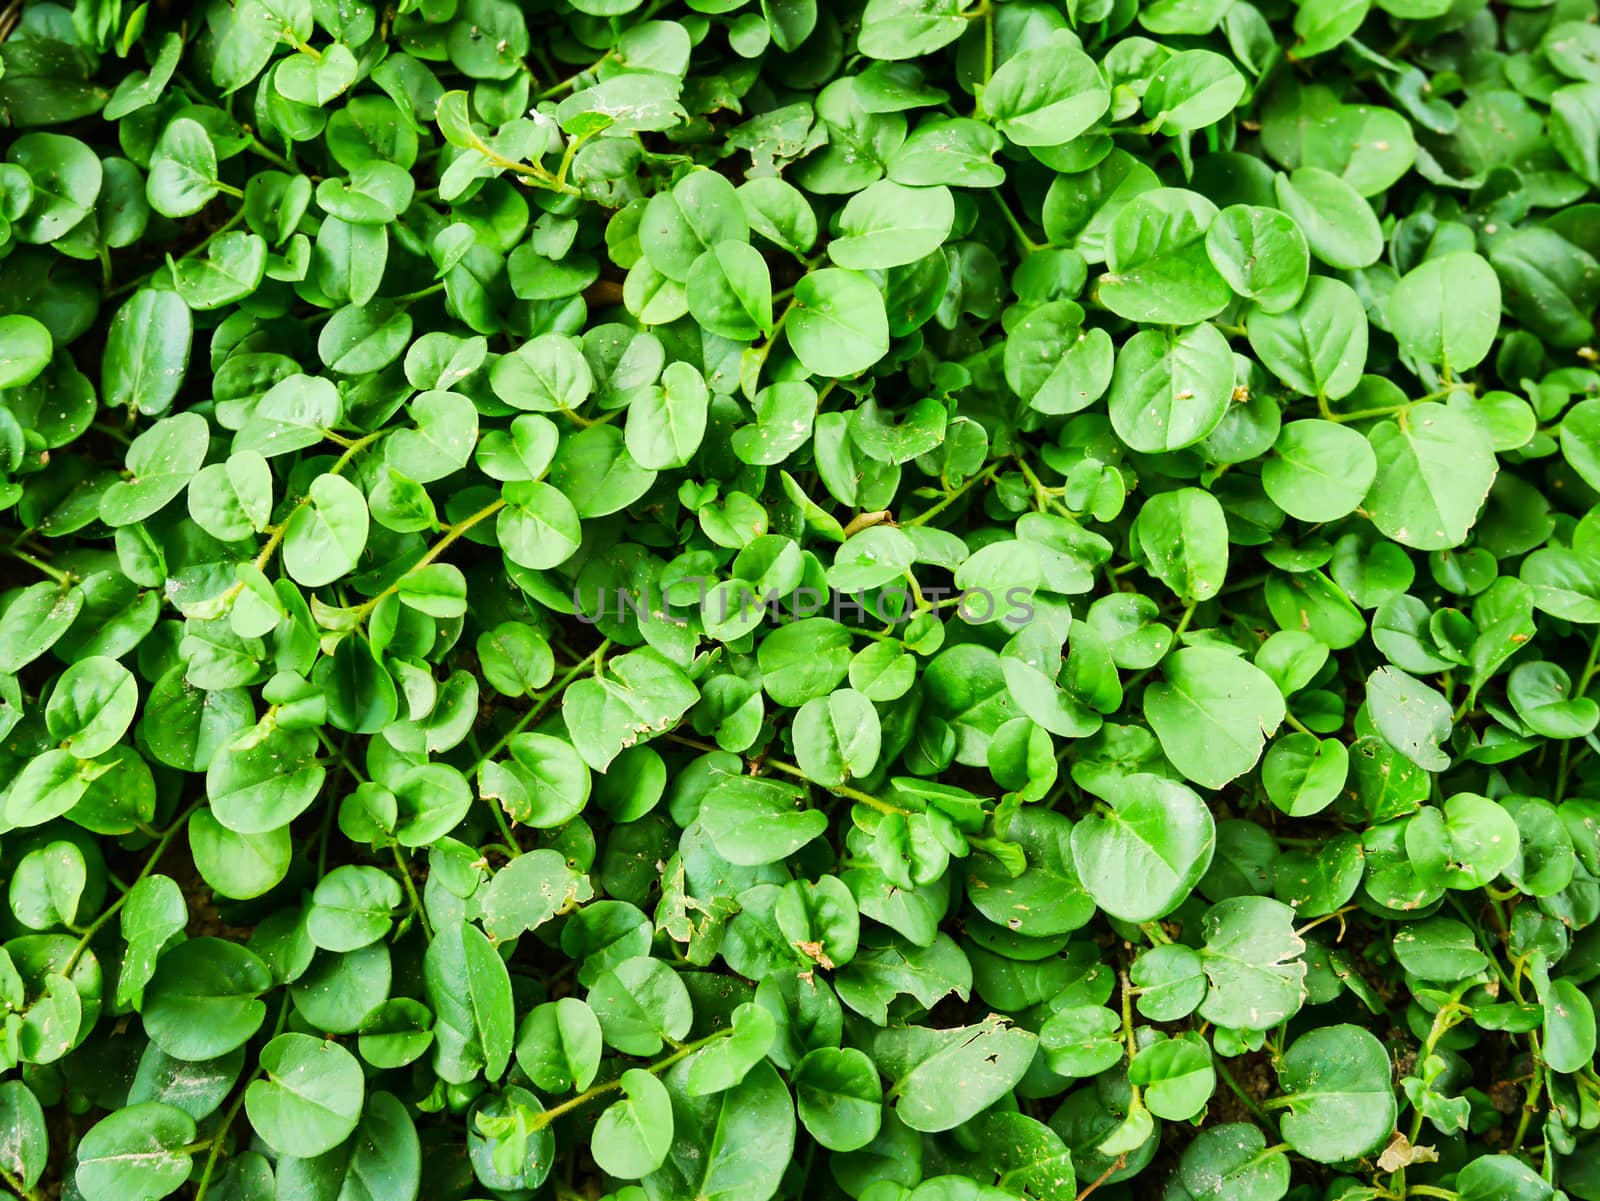 Vintage many green leaf background